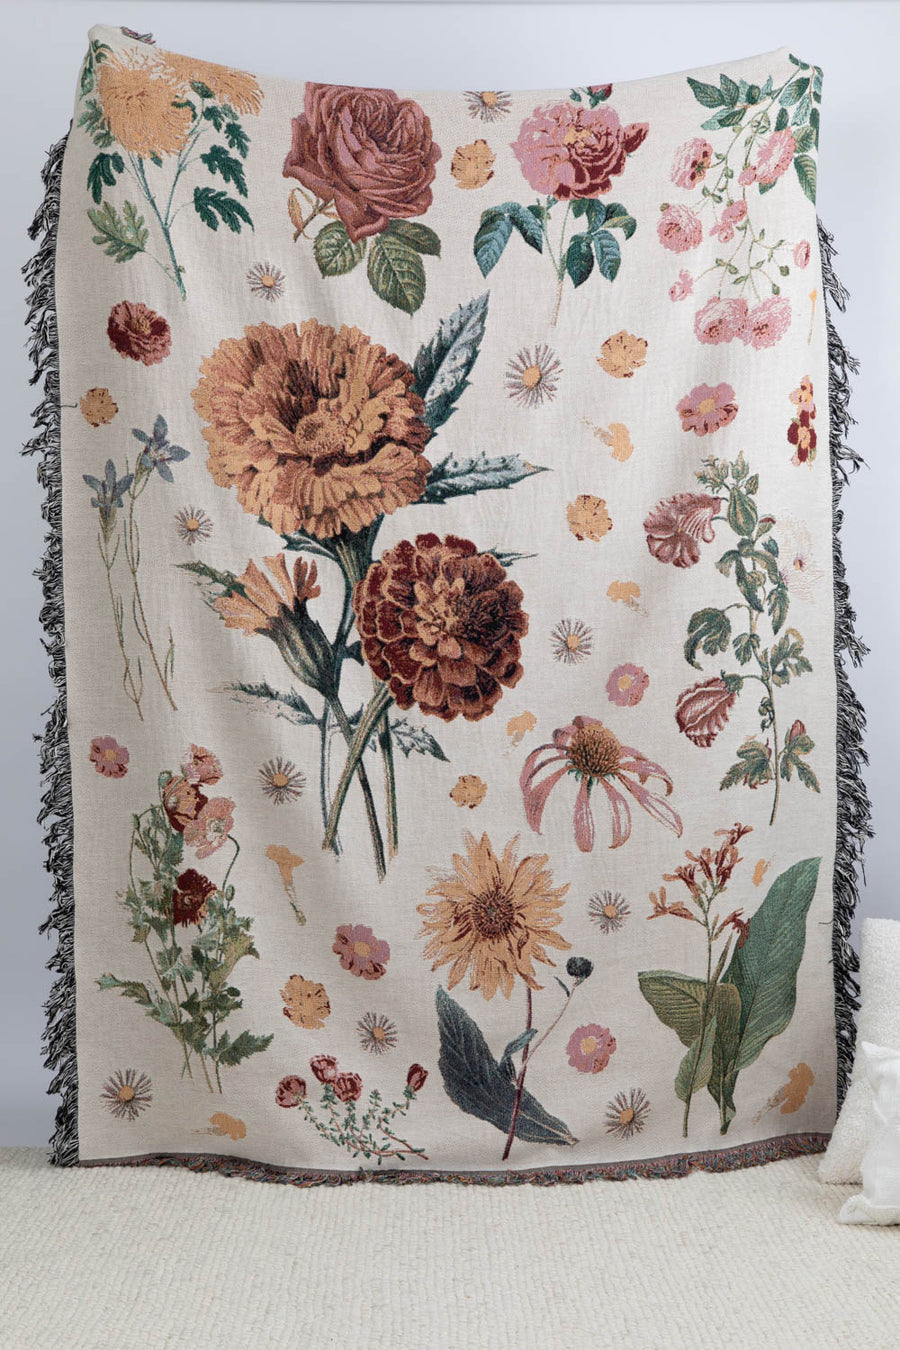 Vintage Floral Throw Blanket 60x80